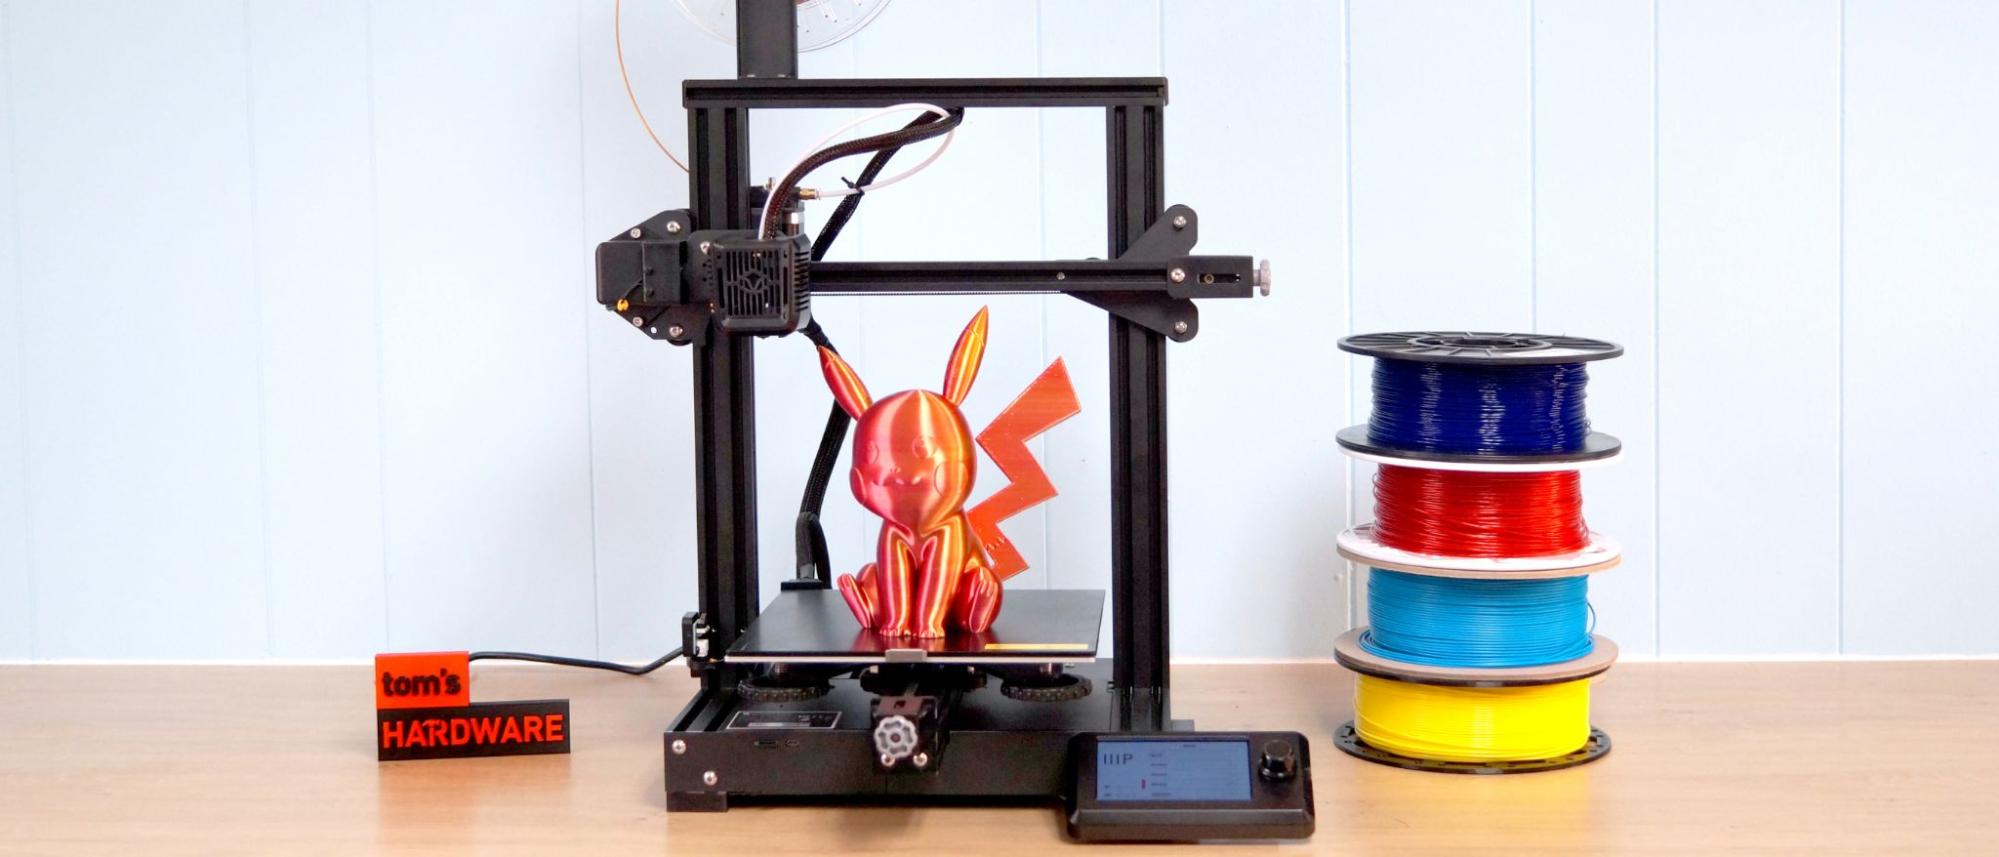 I've designed a custom 3D printable insert for storing my Dremel